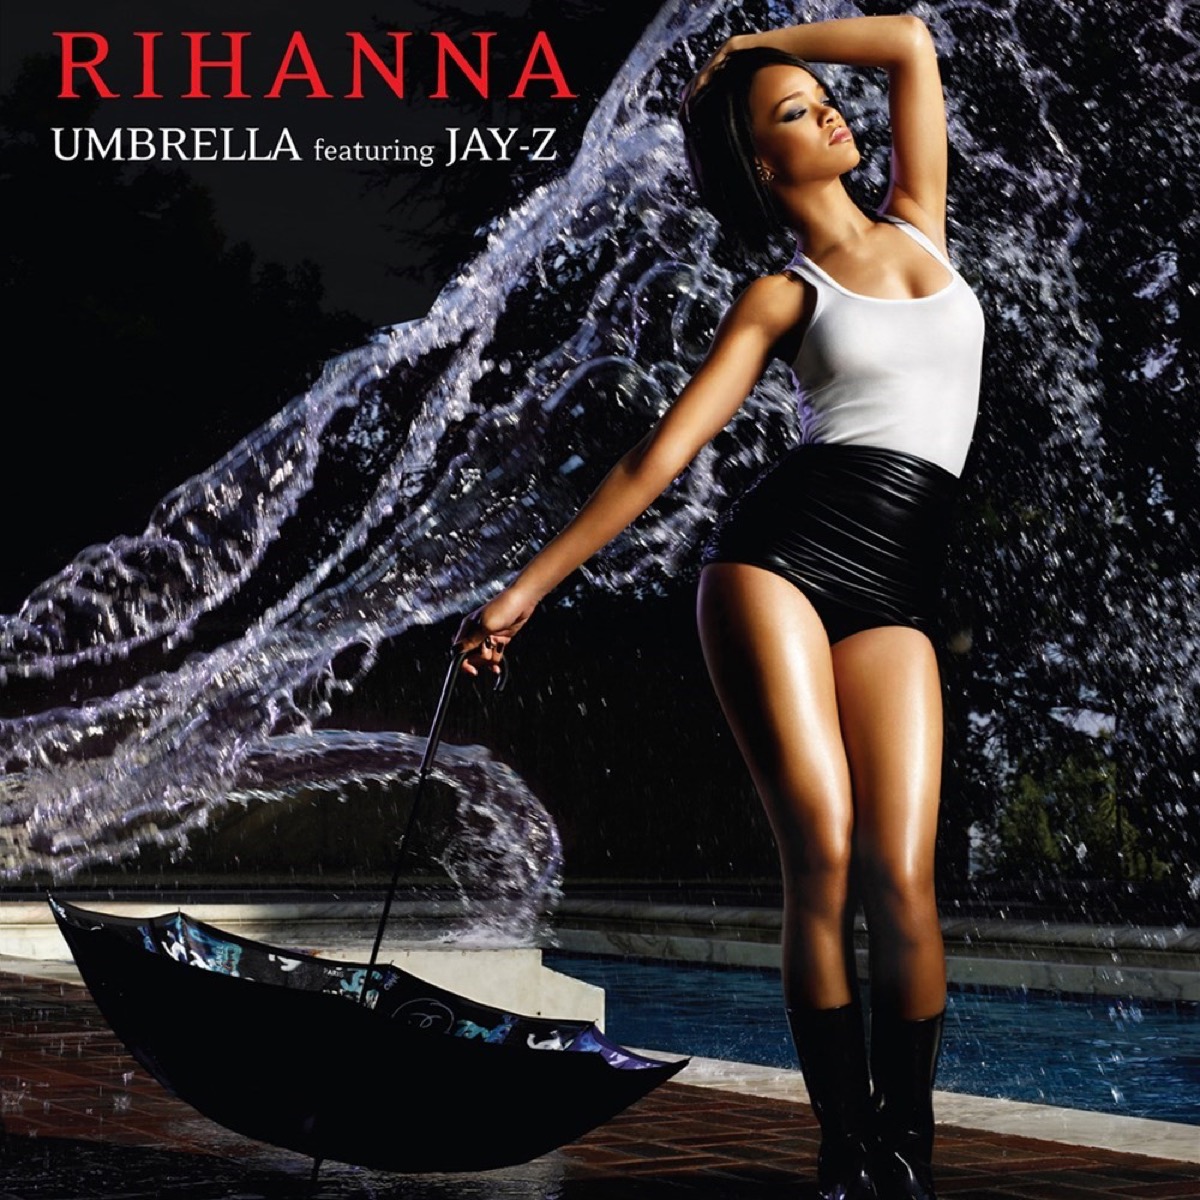 2007: "Umbrella"by Rihanna featuring Jay-Z.